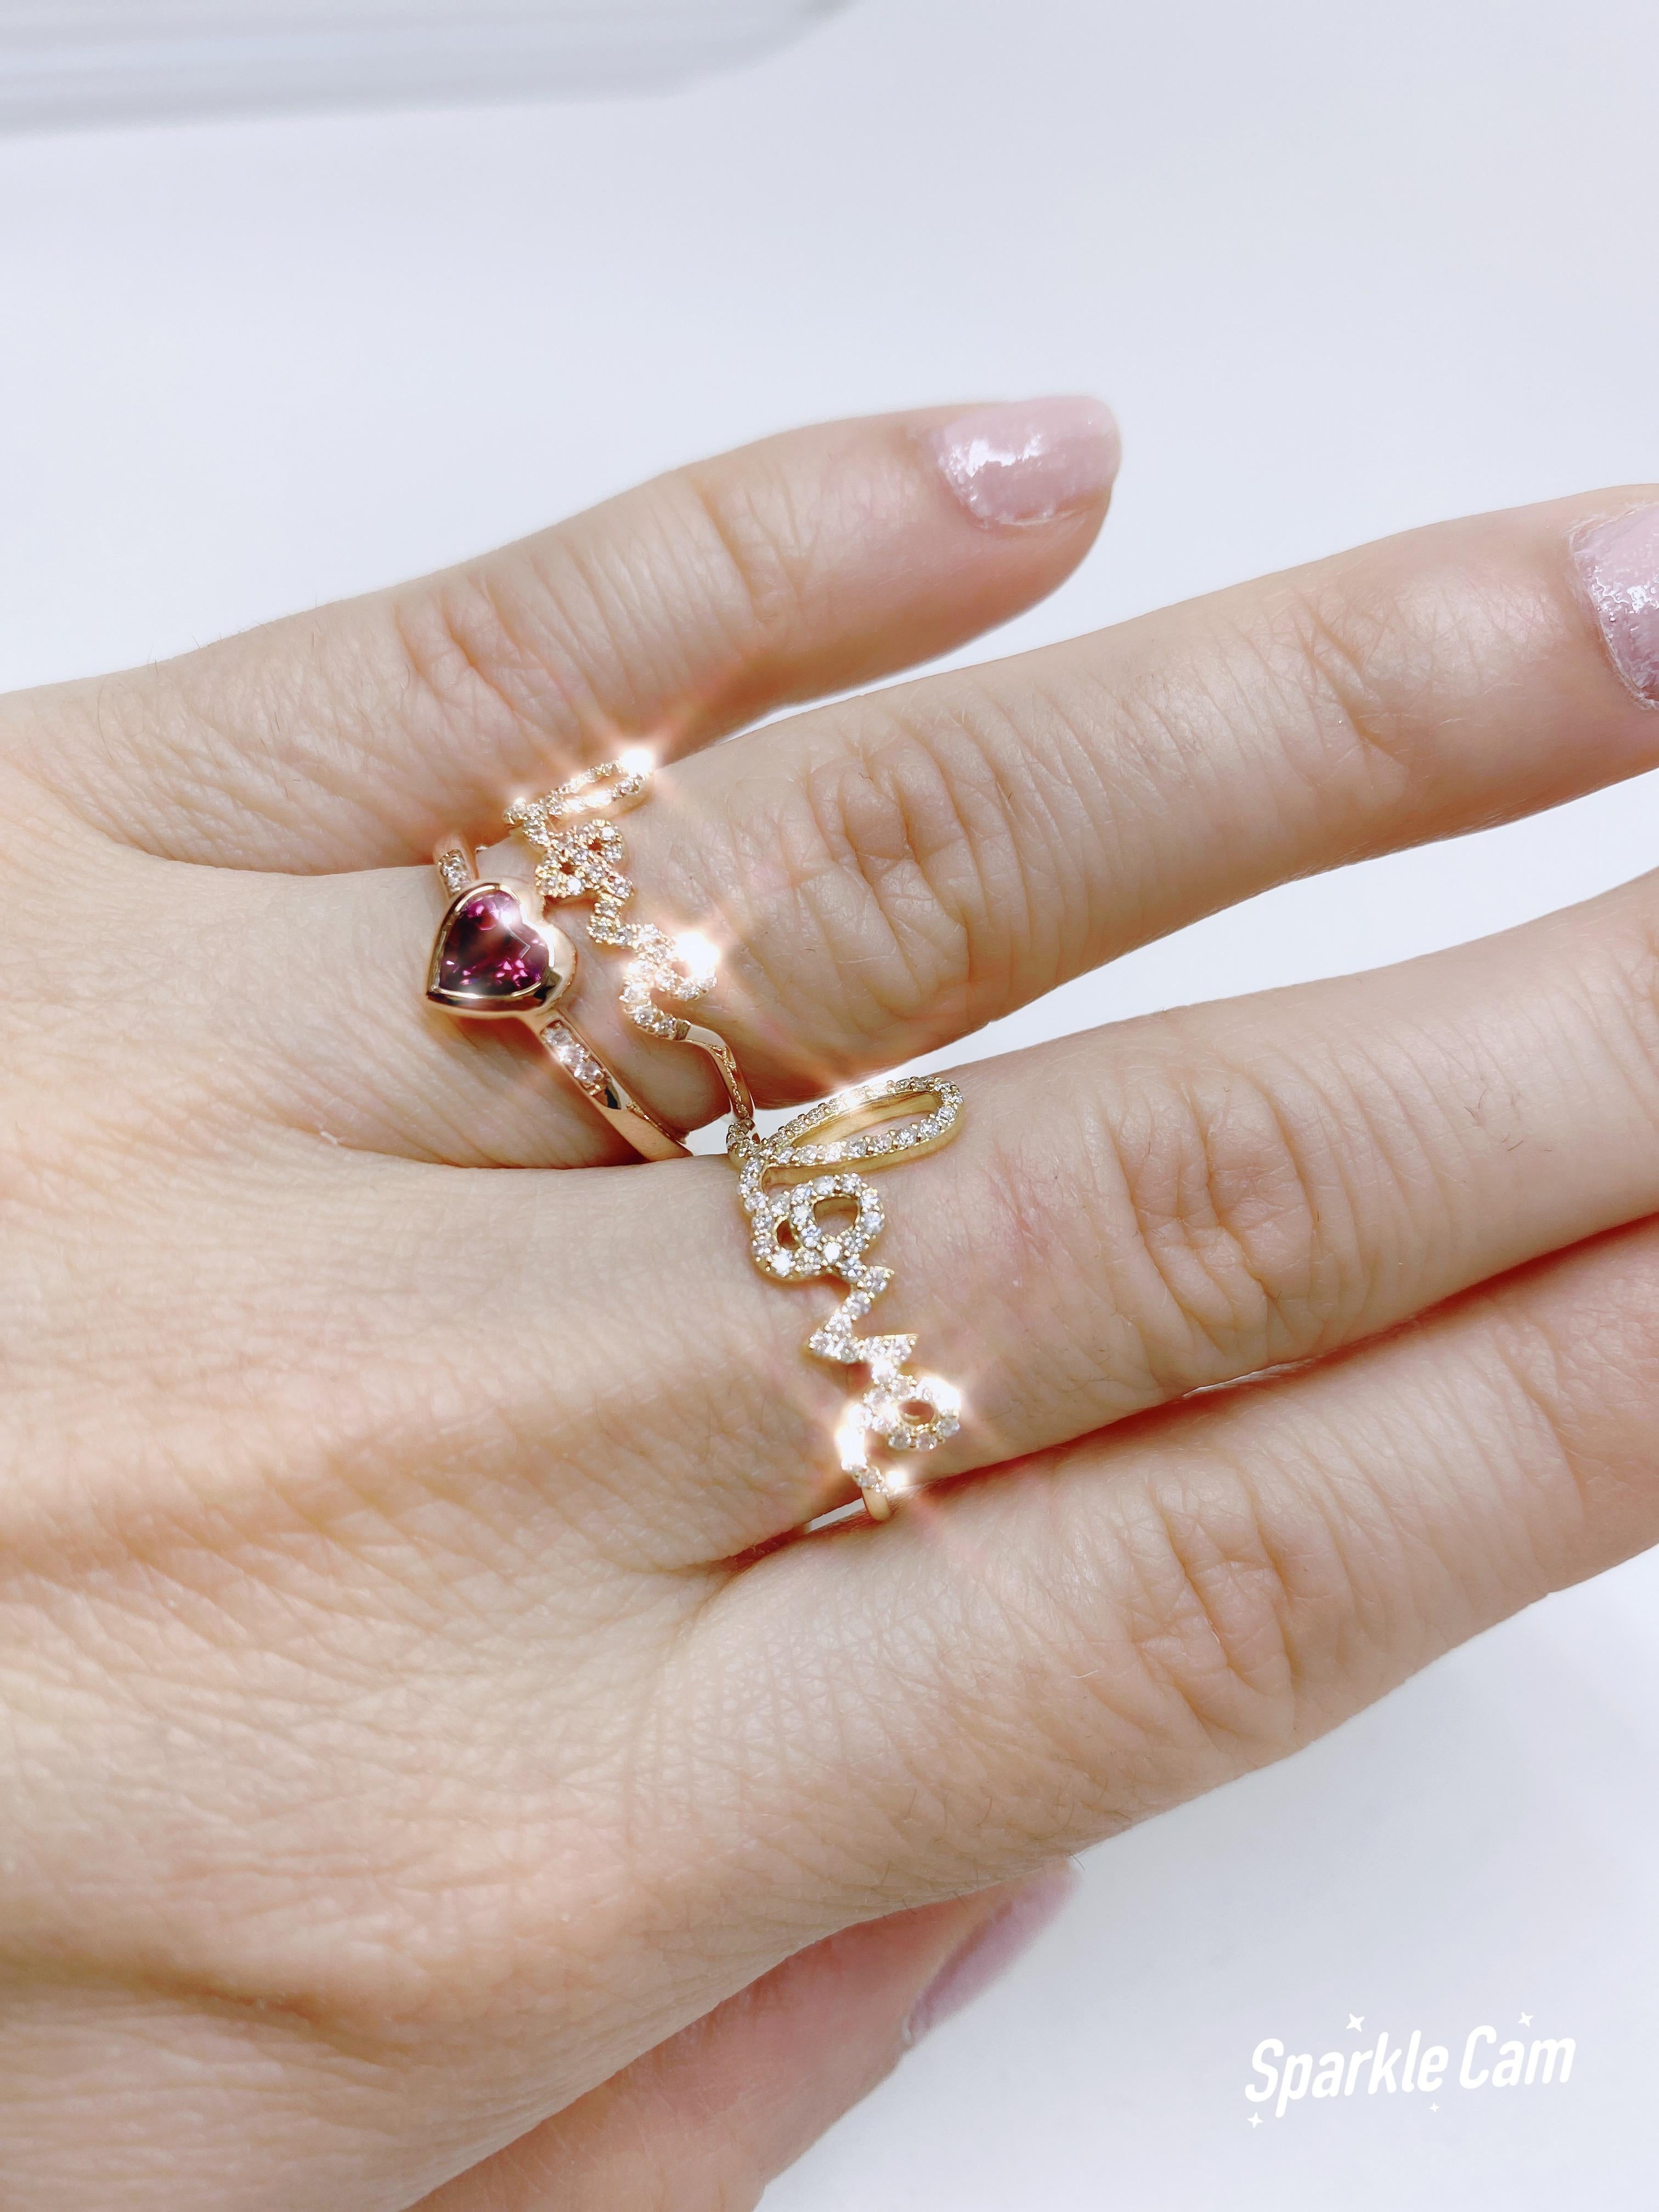 14k White Gold Diamond and Rhodolite Garnet Heart Ring 2